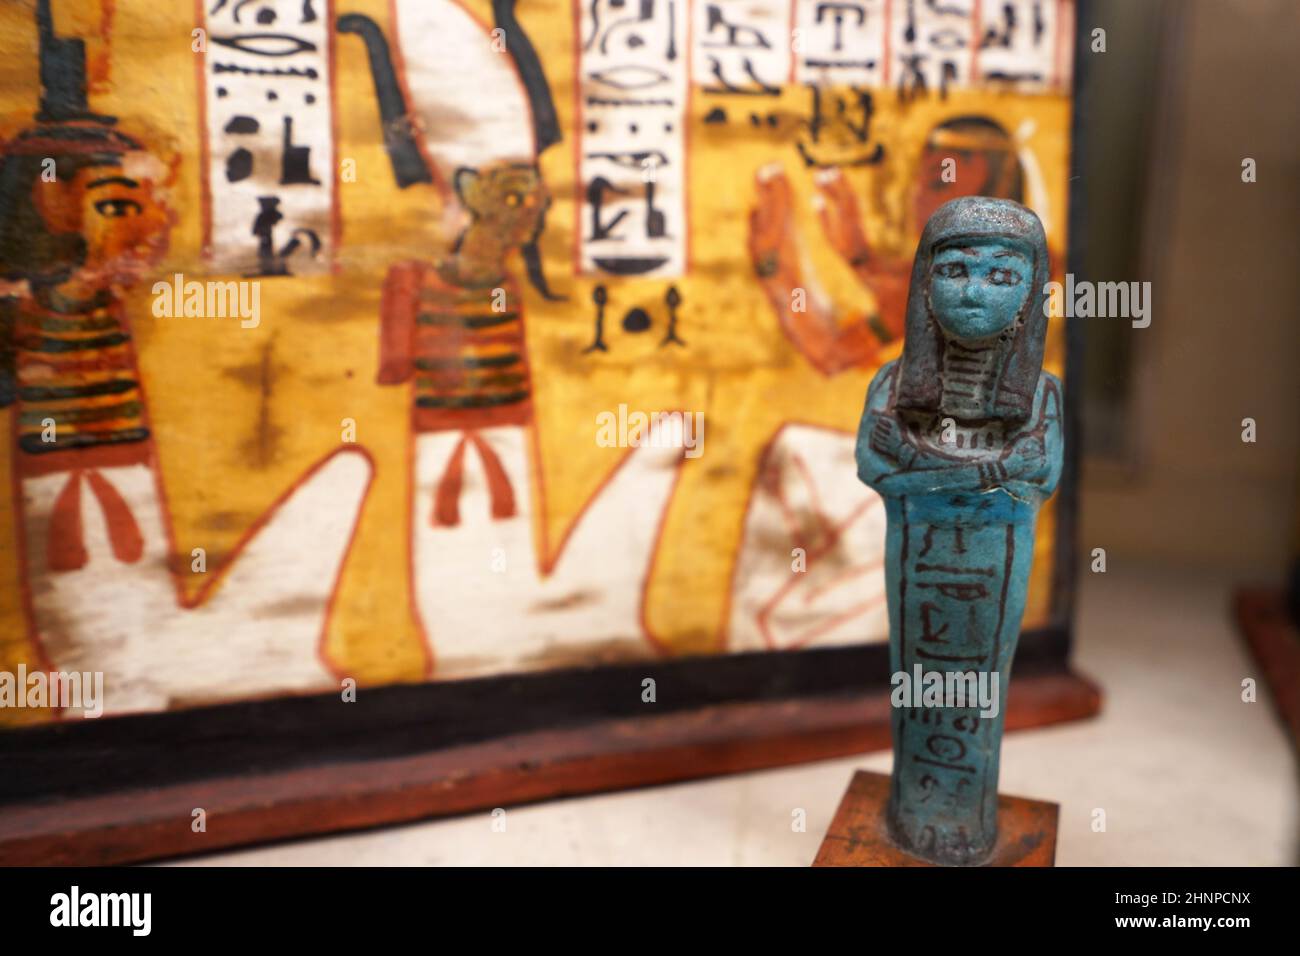 TURIN, ITALIE - 19 AOÛT 2021 : statuette de petite figurine bleue pendant la civilisation égyptienne, Musée égyptien de Turin, Italie Banque D'Images